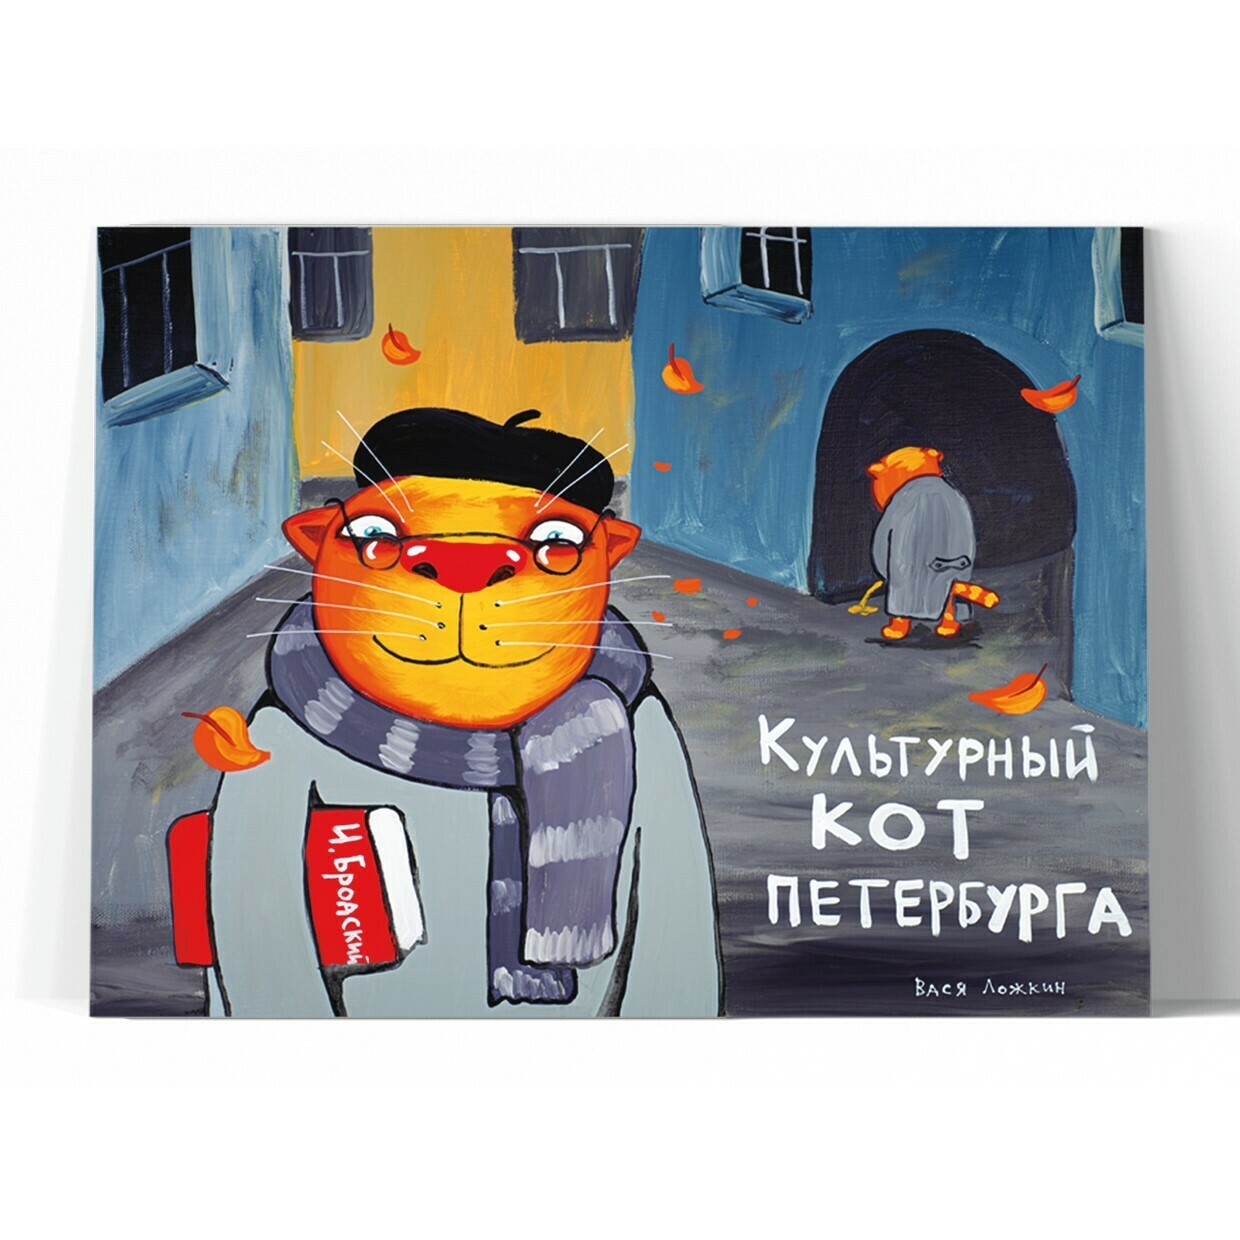 Принт "Культурный кот Петербурга" 60x70